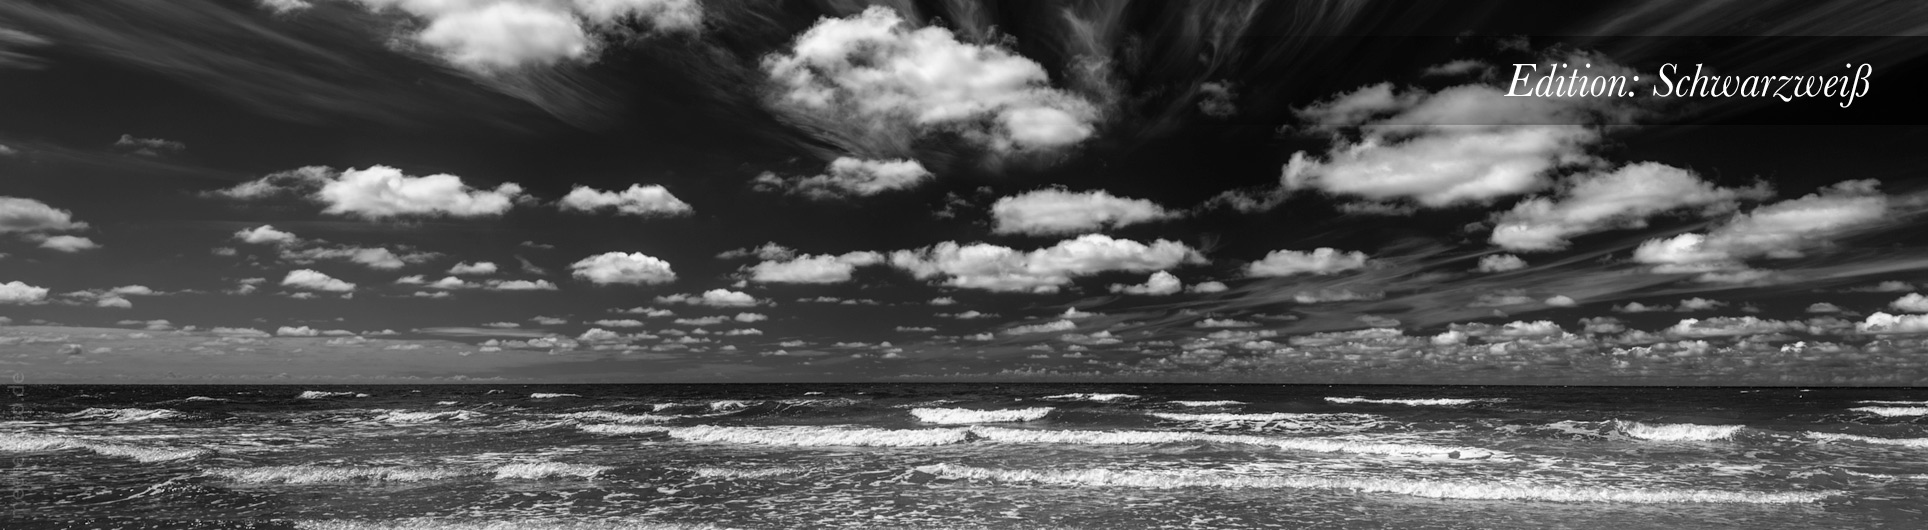 Schwarzweißbild von Nordseewellen im Sommer